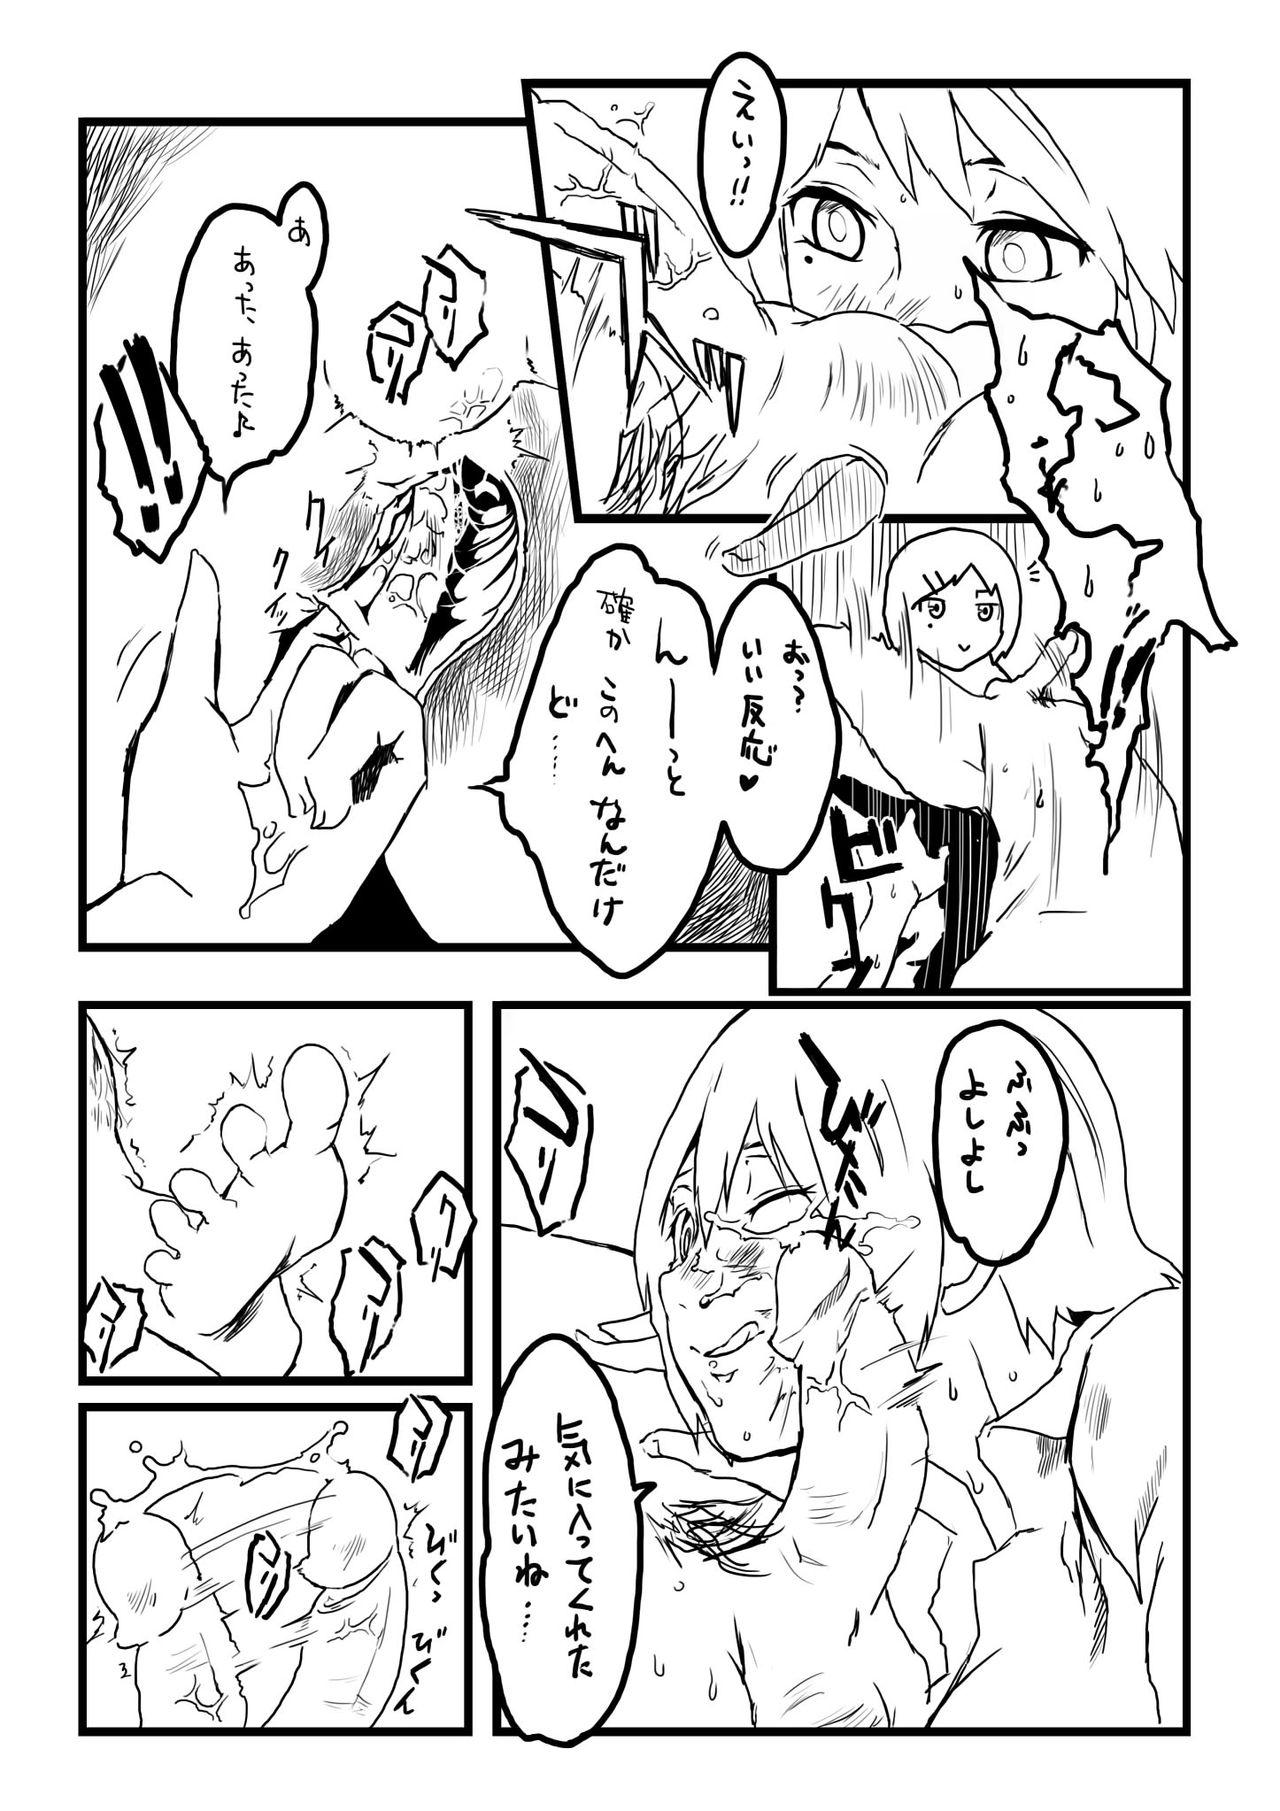 Amateurs Gone Tamazeme to Zenritsusen Seme no Ero Manga - Original Negao - Page 4